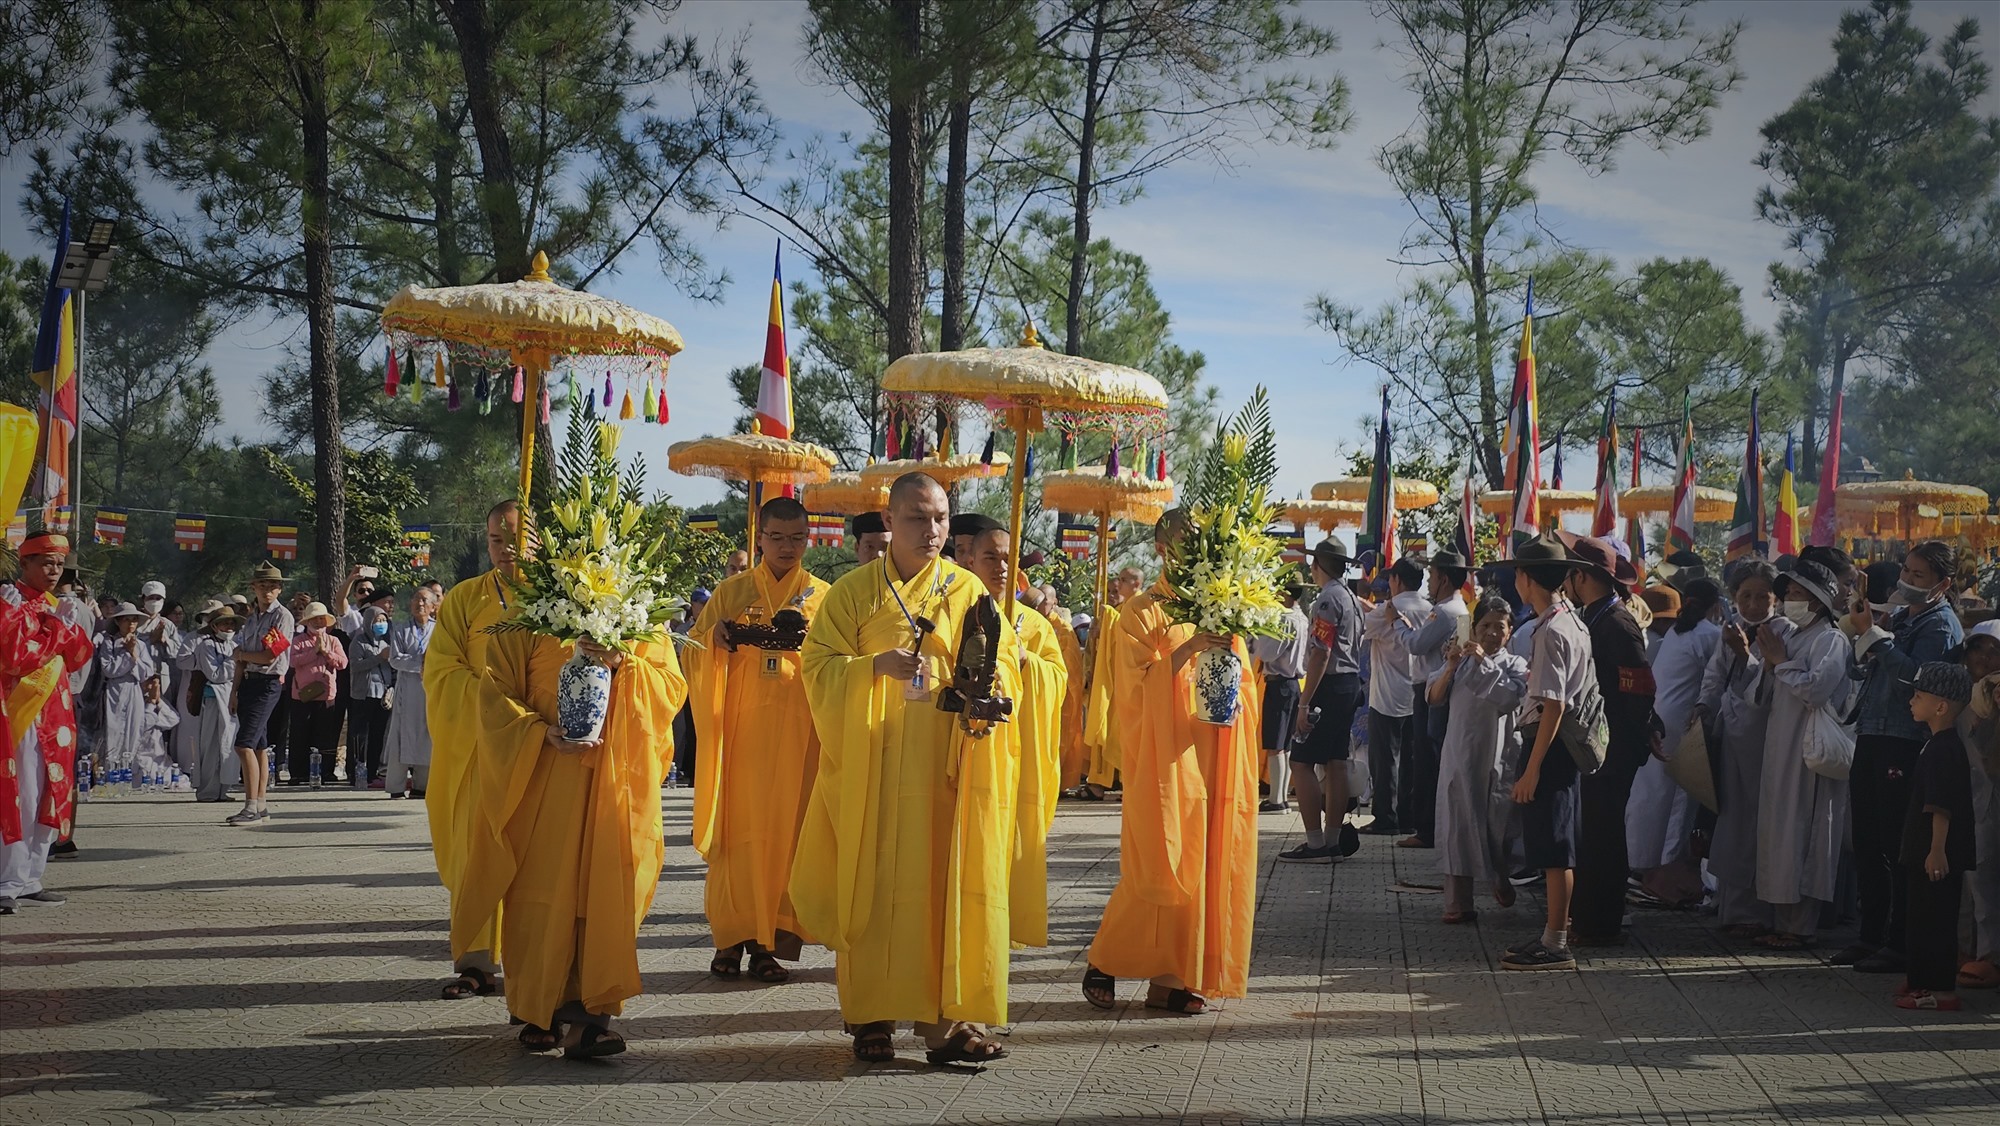 Theo đó, Lễ hội Quán Thế Âm hàng năm tại núi Tứ Tượng, bên dòng Hương giang, với cảnh trí thiên nhiên vừa hùng vĩ vừa thơ mộng, vừa hiện thực, vừa huyền bí, đã góp phần tạo nên nét đặc trưng riêng của Đạo Phật ở vùng đất Thừa Thiên Huế.